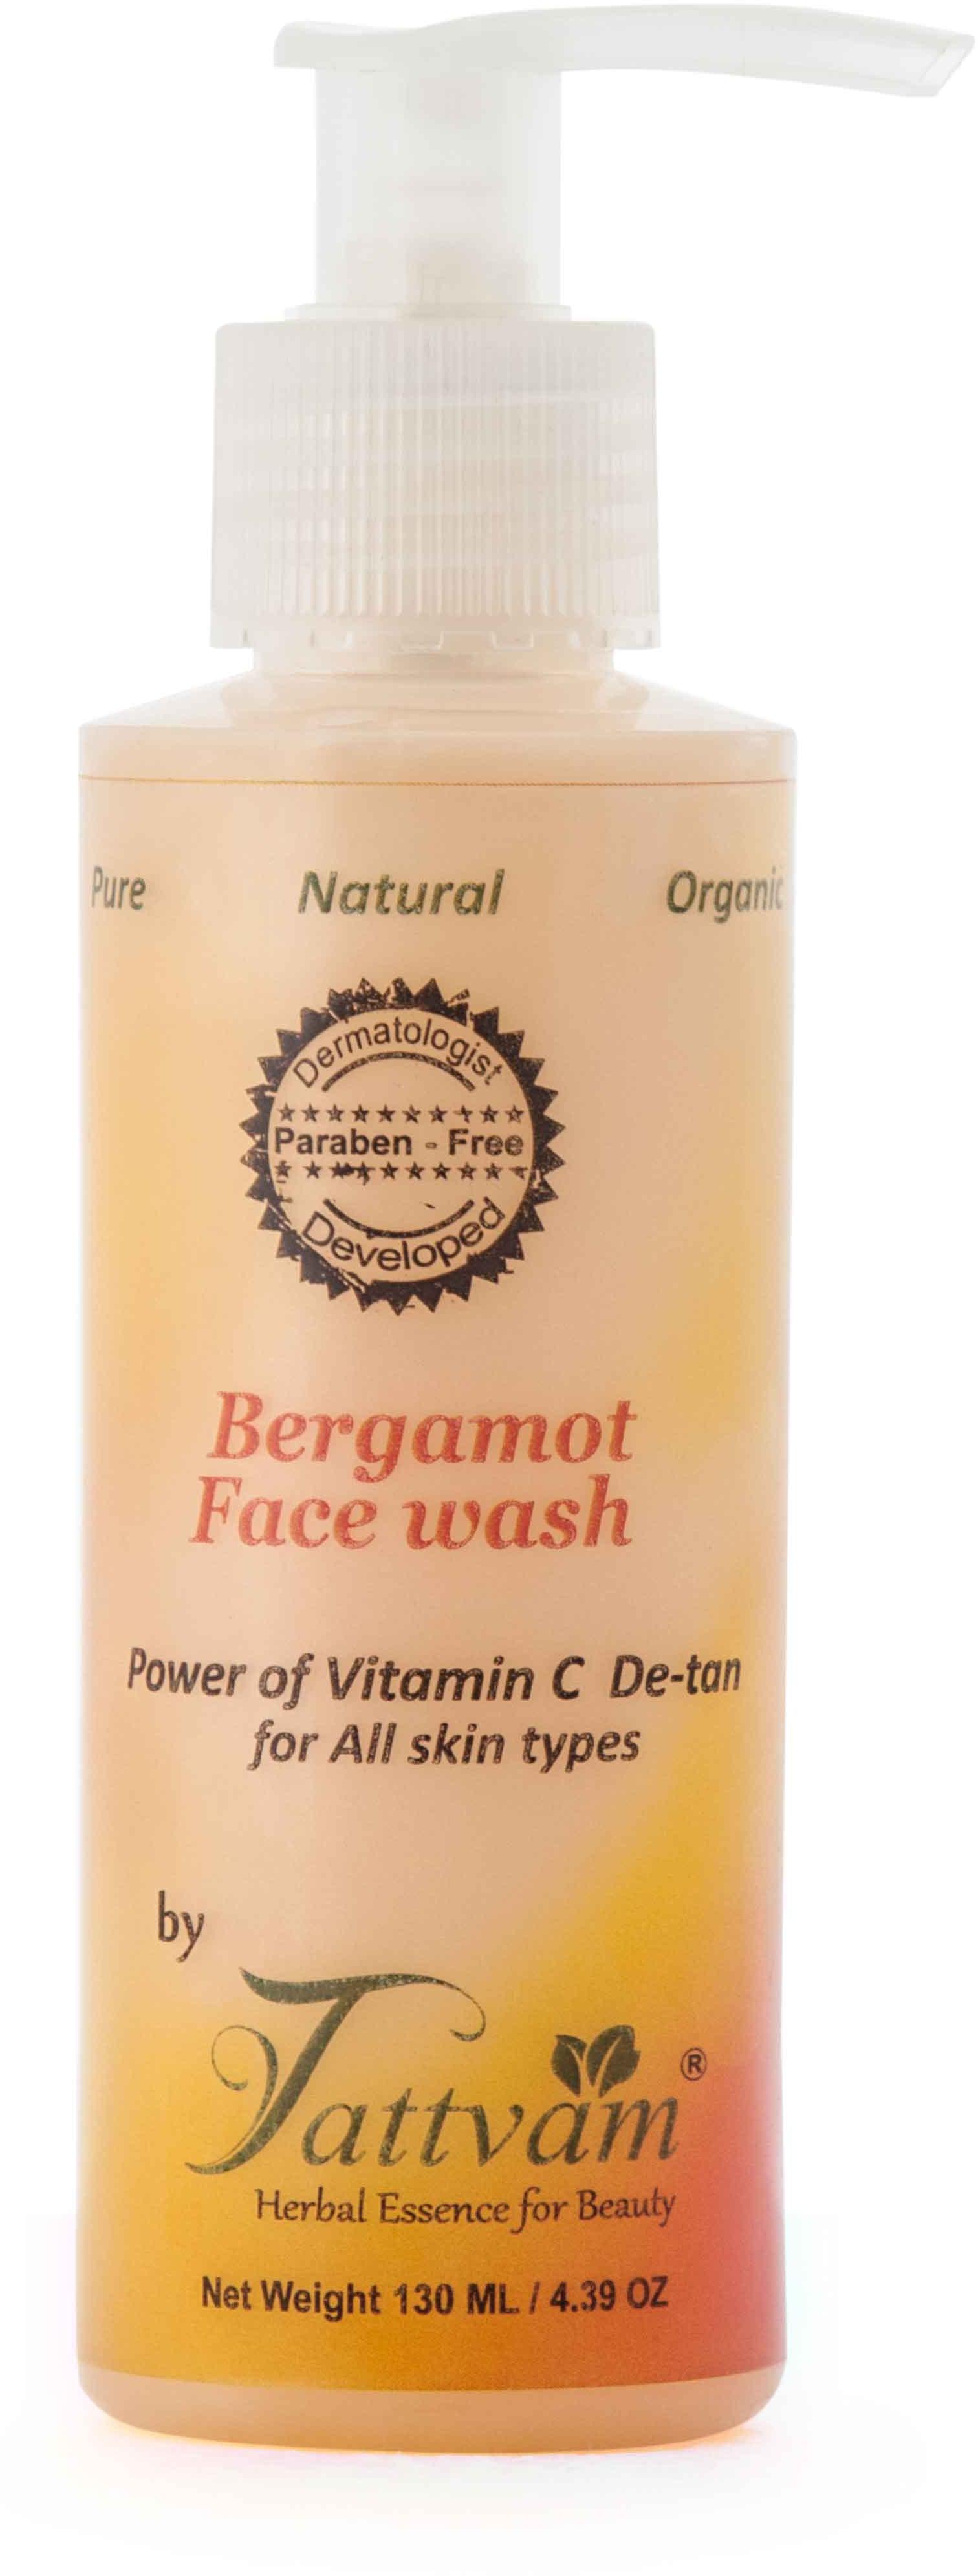 Bergamot Face Wash